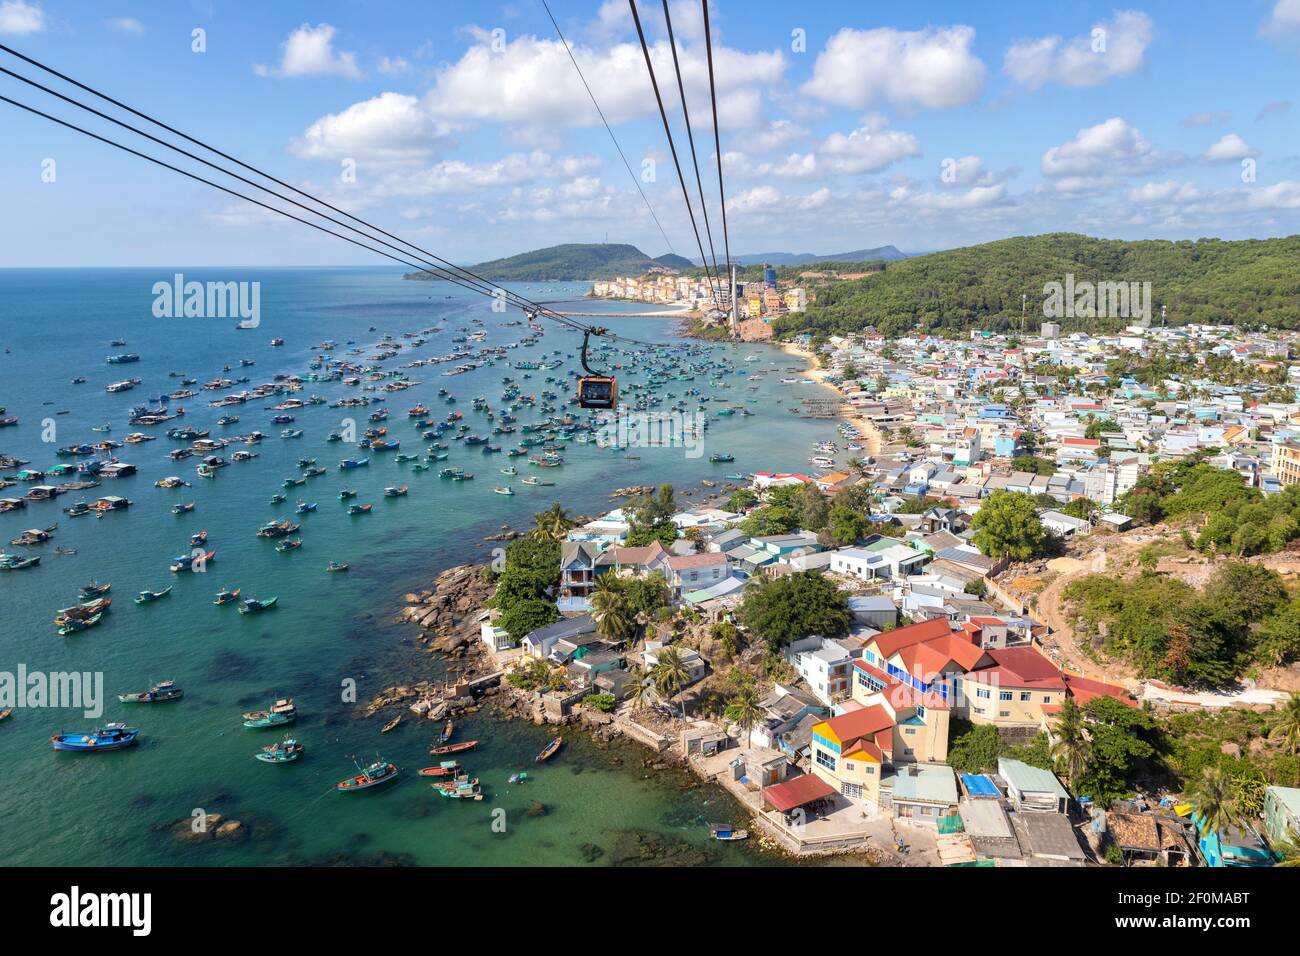 Vue aérienne du téléphérique de l'île de Phu Quoc, Vietnam Banque D'Images